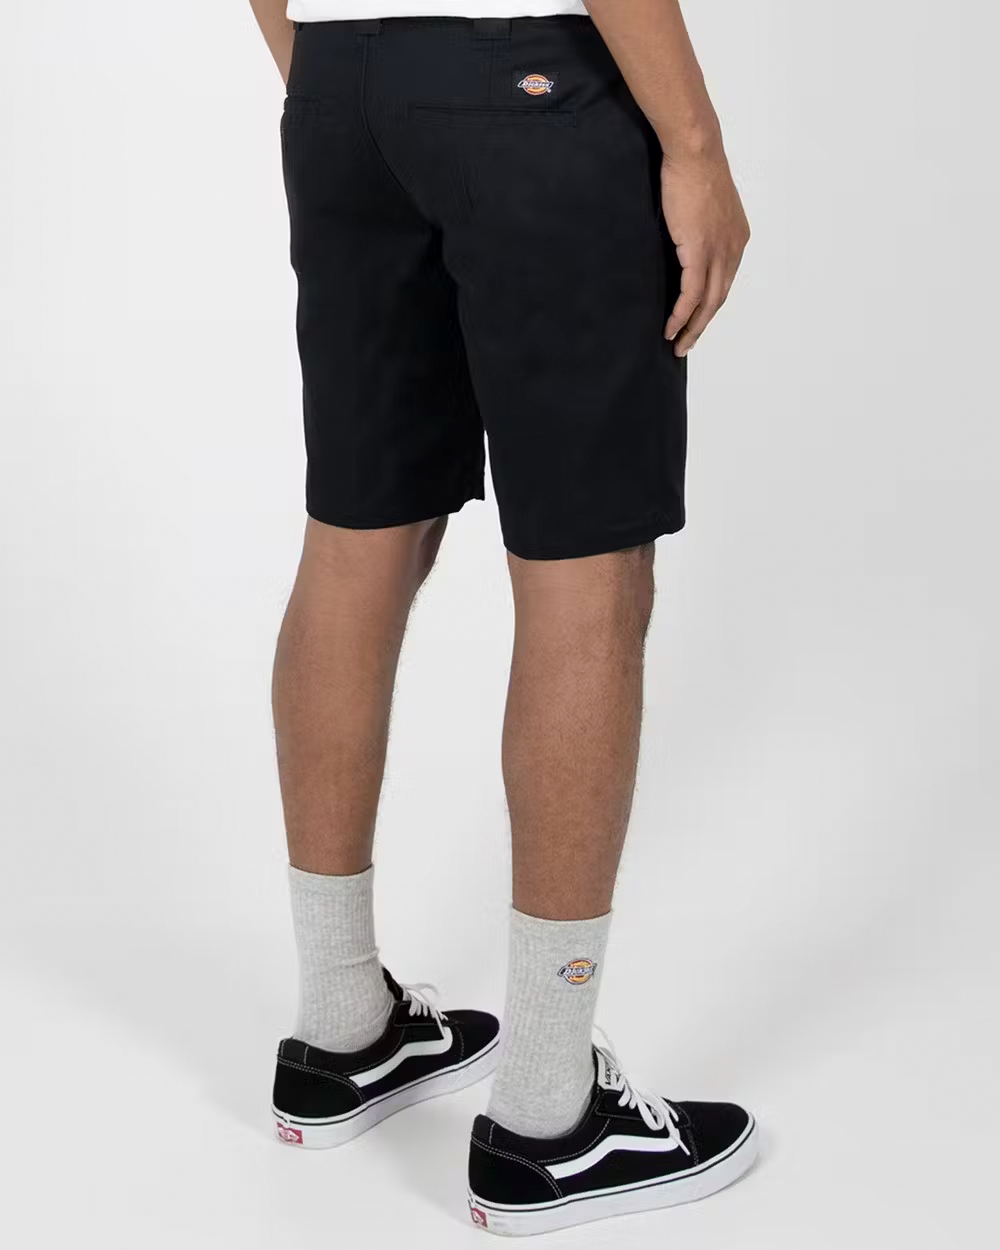 DICKIES 872 Slim Fit Shorts - Black - VENUE.